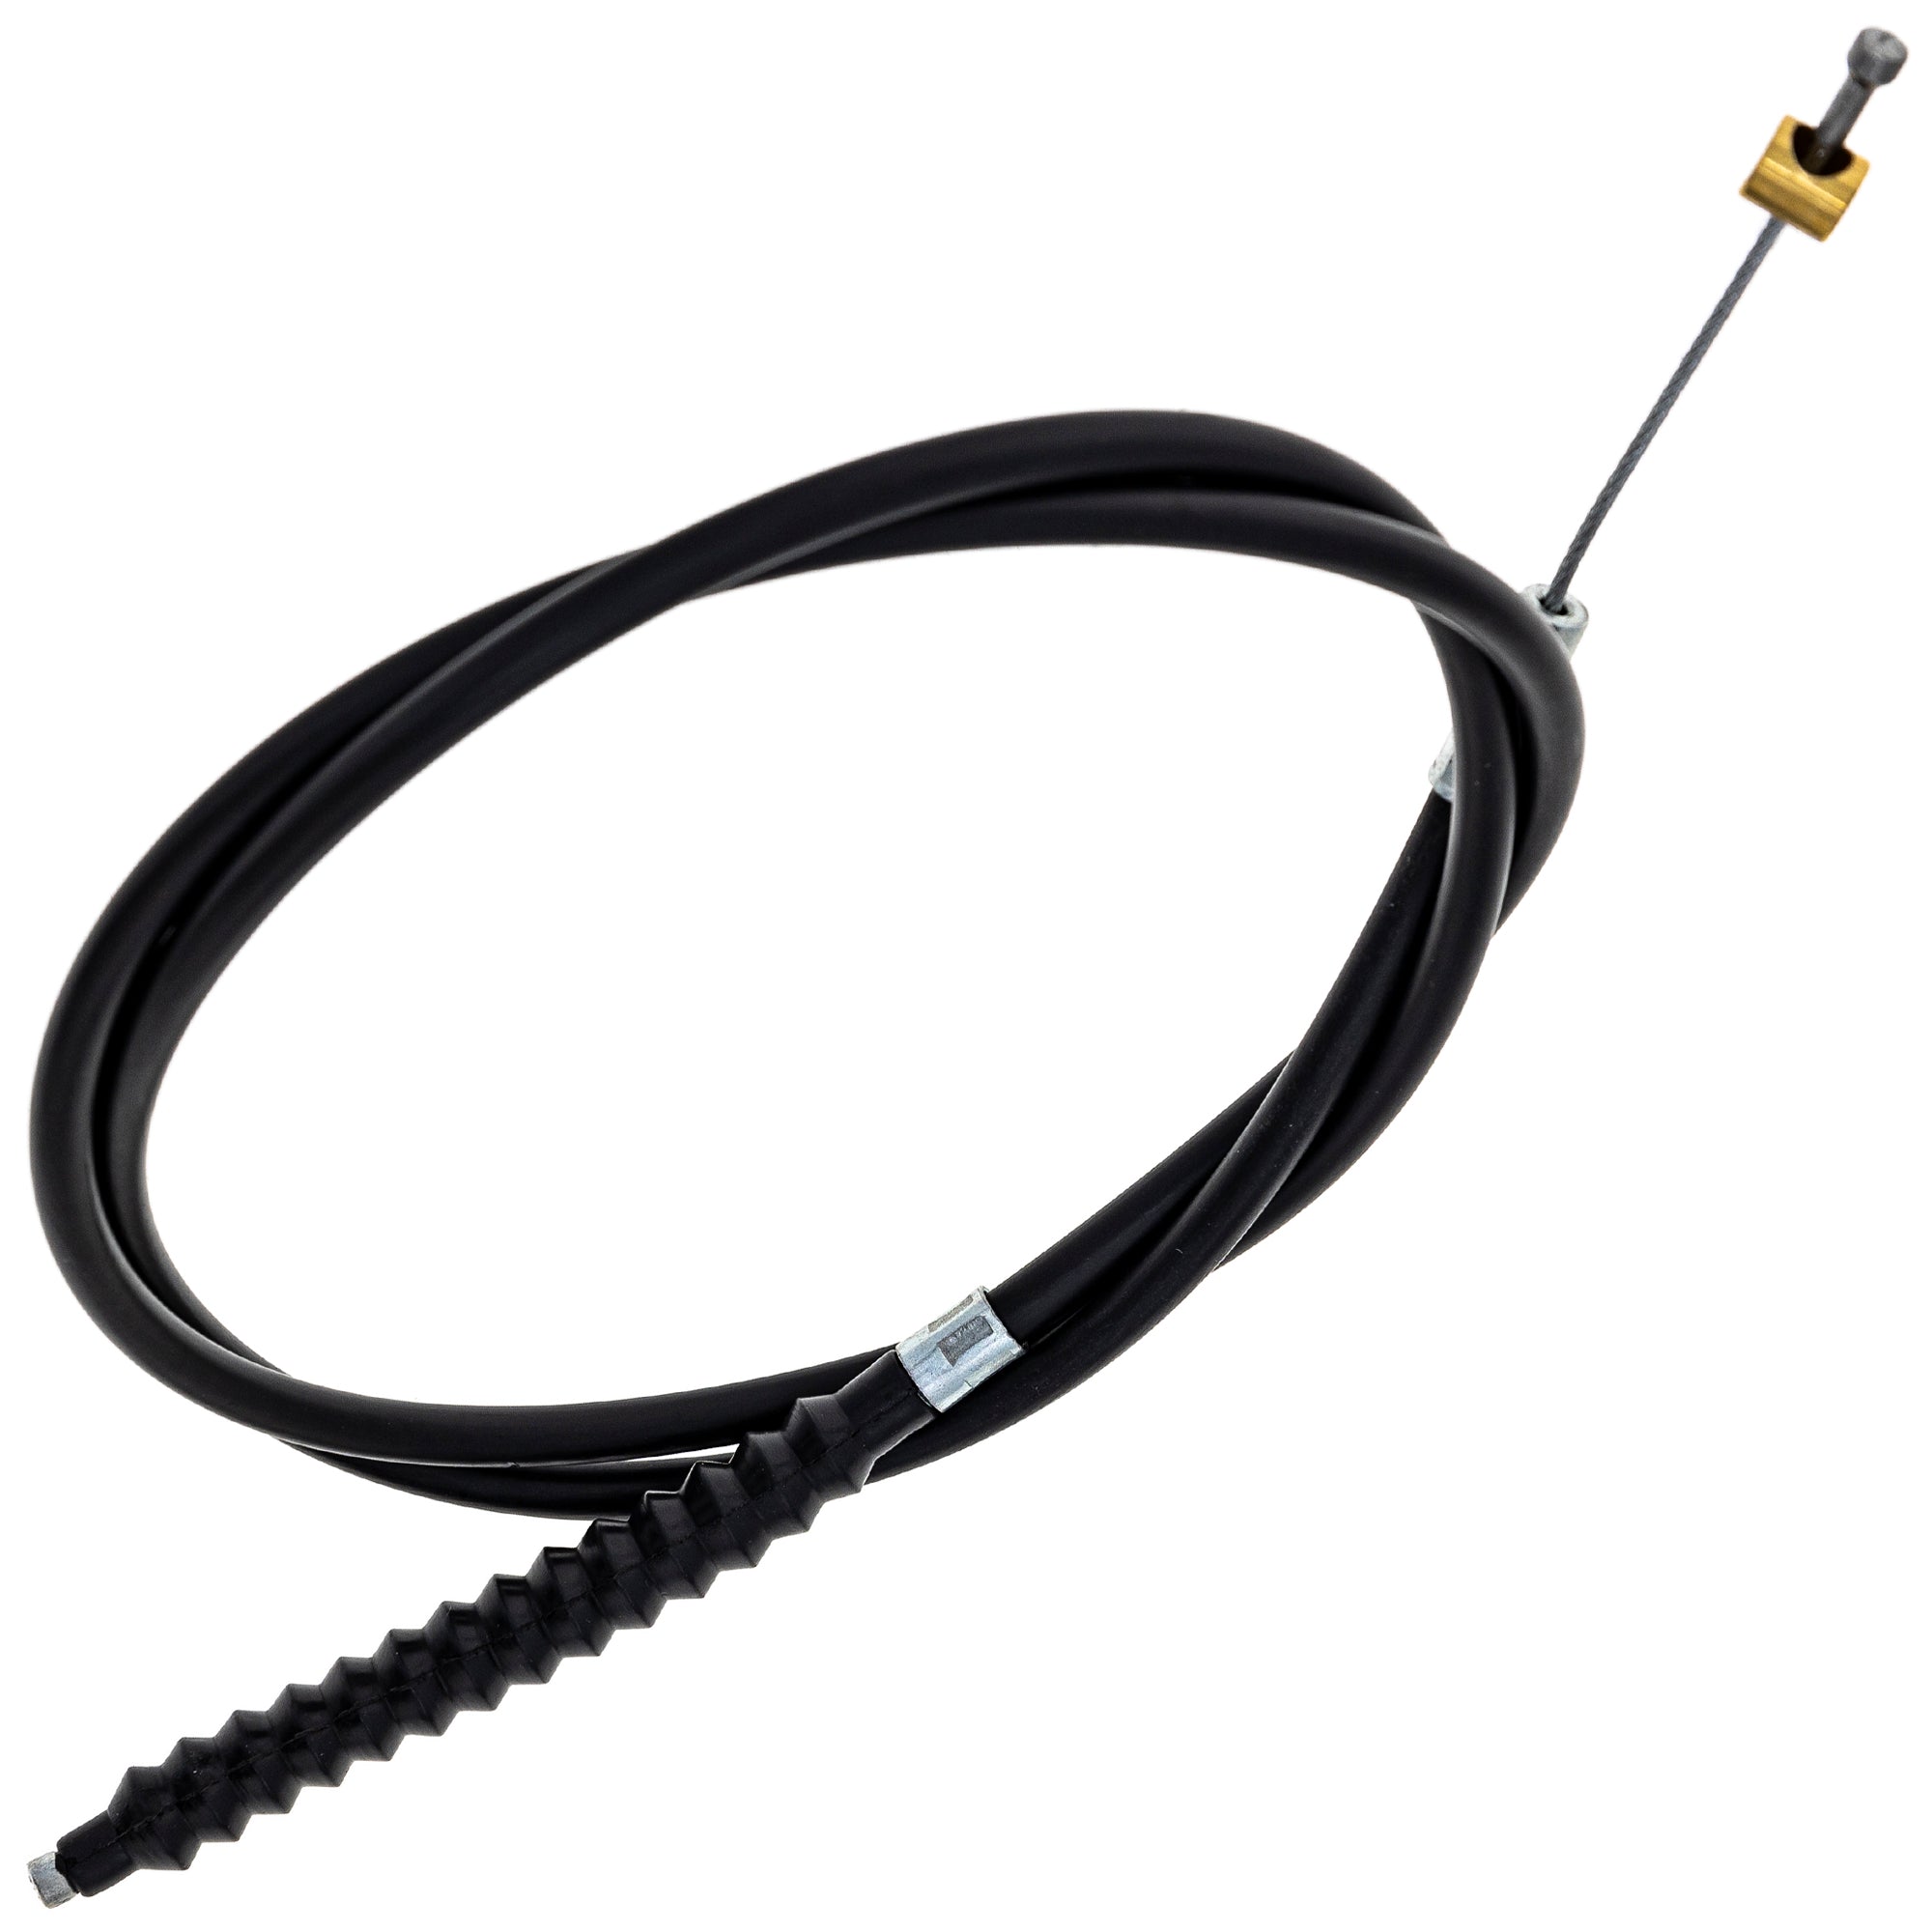 Clutch Cable for Husqvarna TC610 TE610 TE410 WXC610 WXE610 800092218